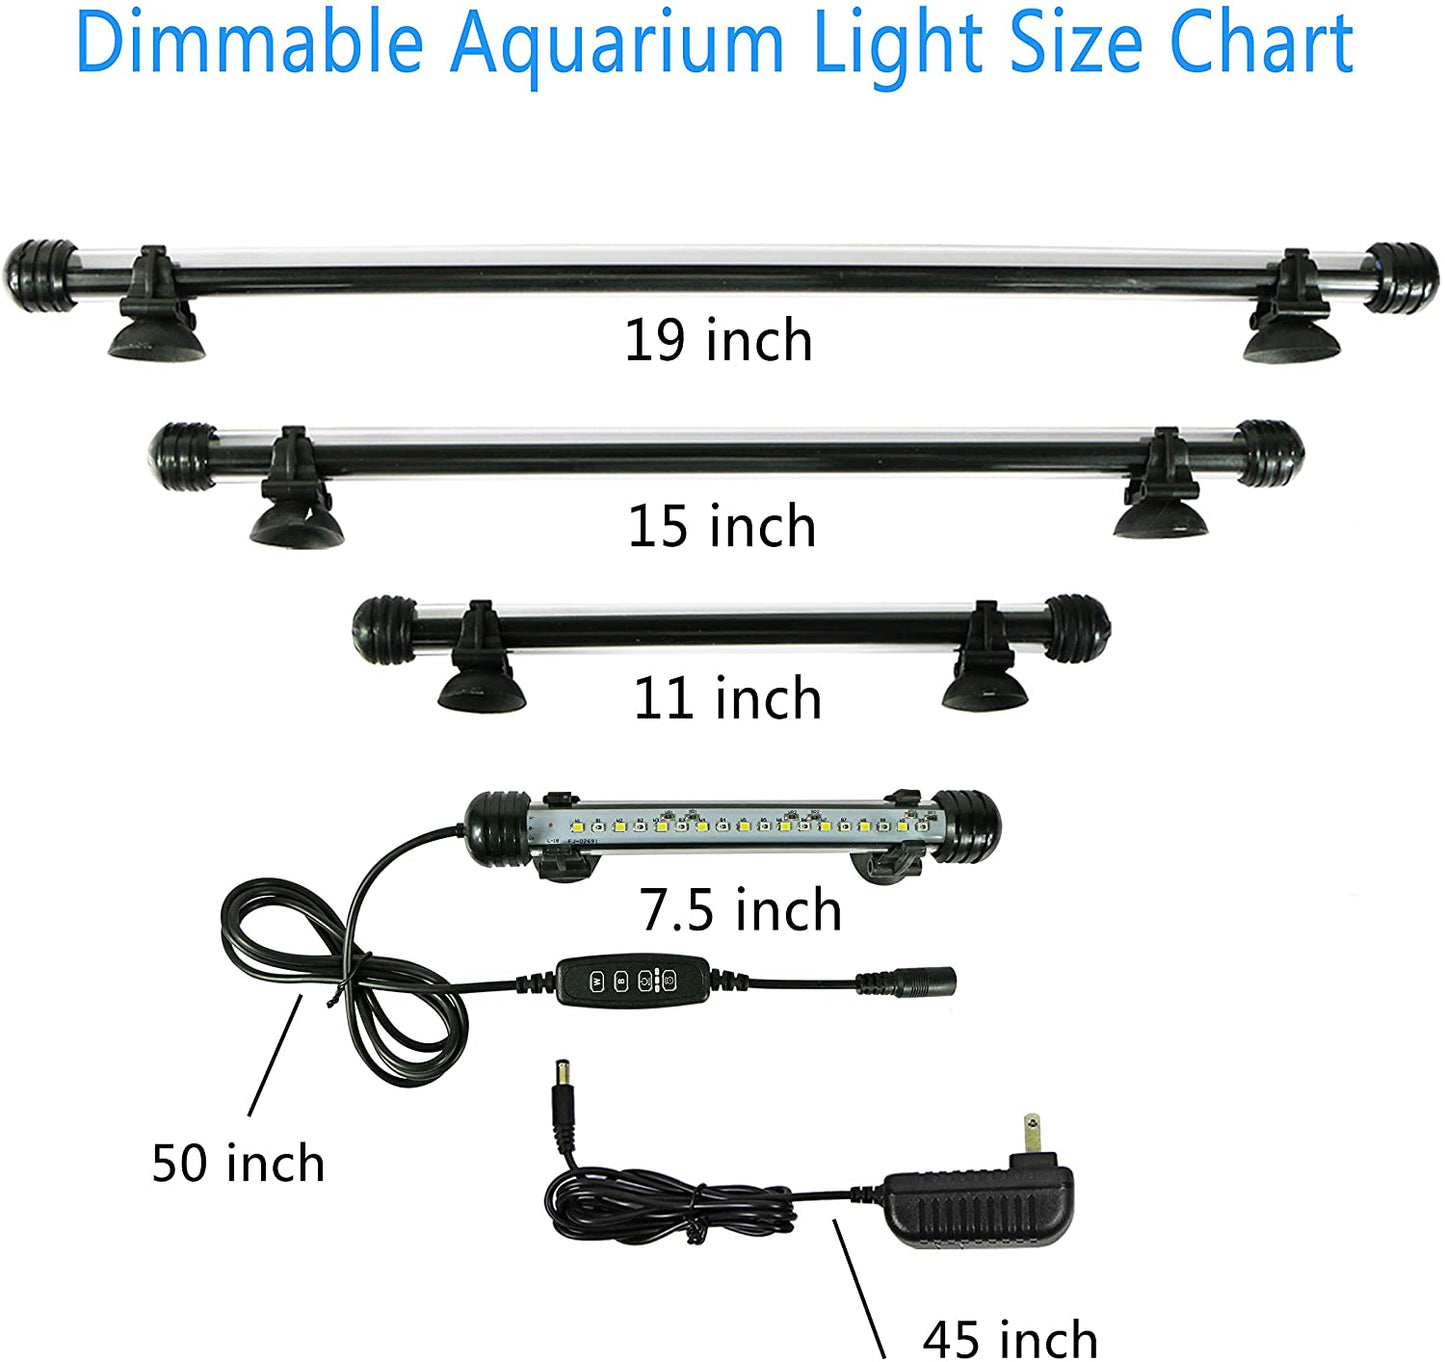 LED Aquarium Light Fish Tank Light with Timer Auto On/Off, White & Blue LED Light bar Stick for Fish Tank